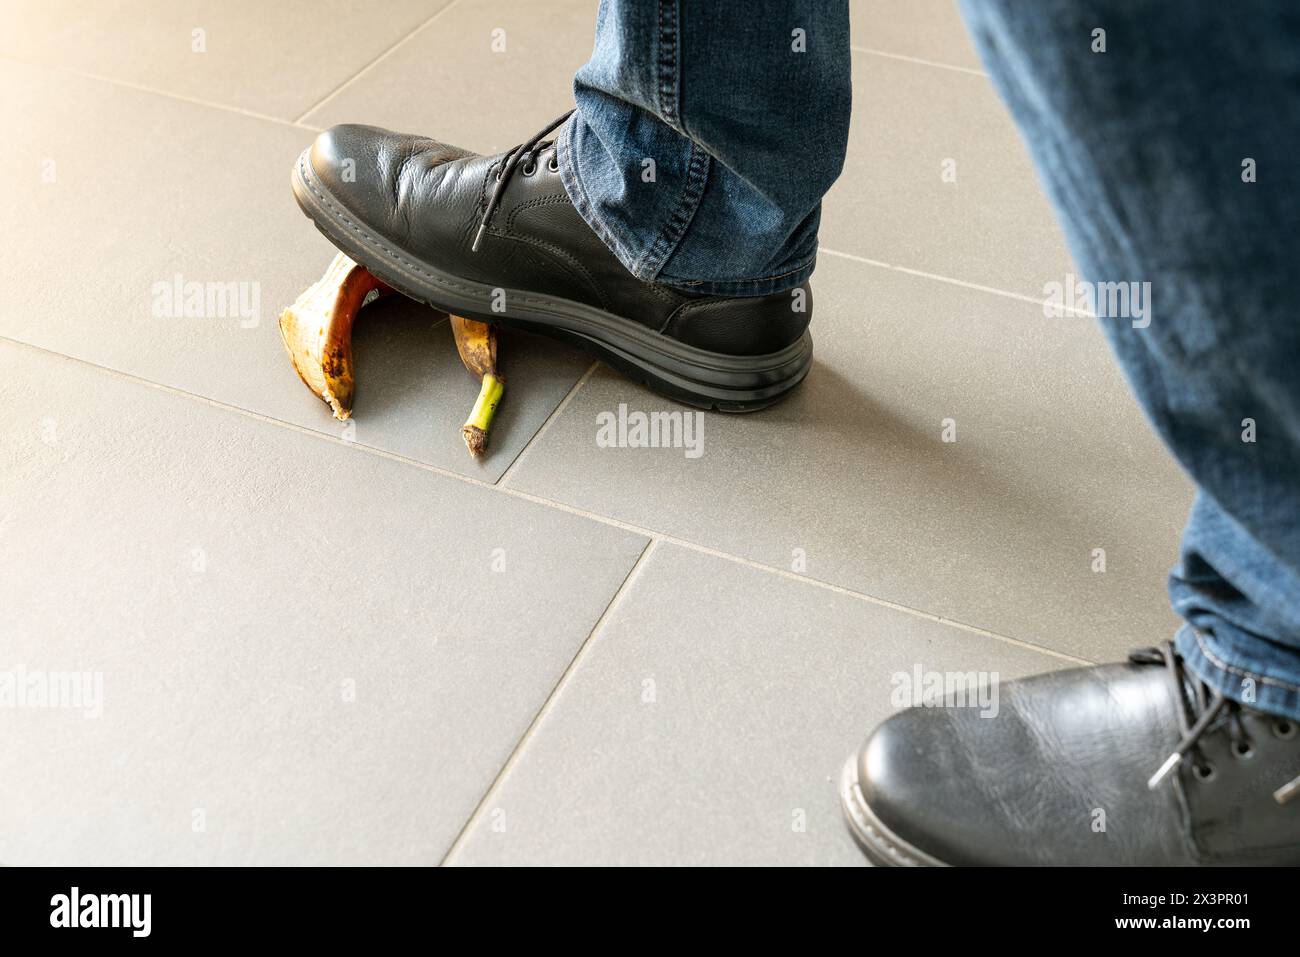 Nahaufnahme eines Mannes in schwarzen Schuhen, der beim Gehen auf eine Bananenschale tritt. Begriff der Stolpergefahr oder Sturzgefahr. Nur die Füße sichtbar. Stockfoto